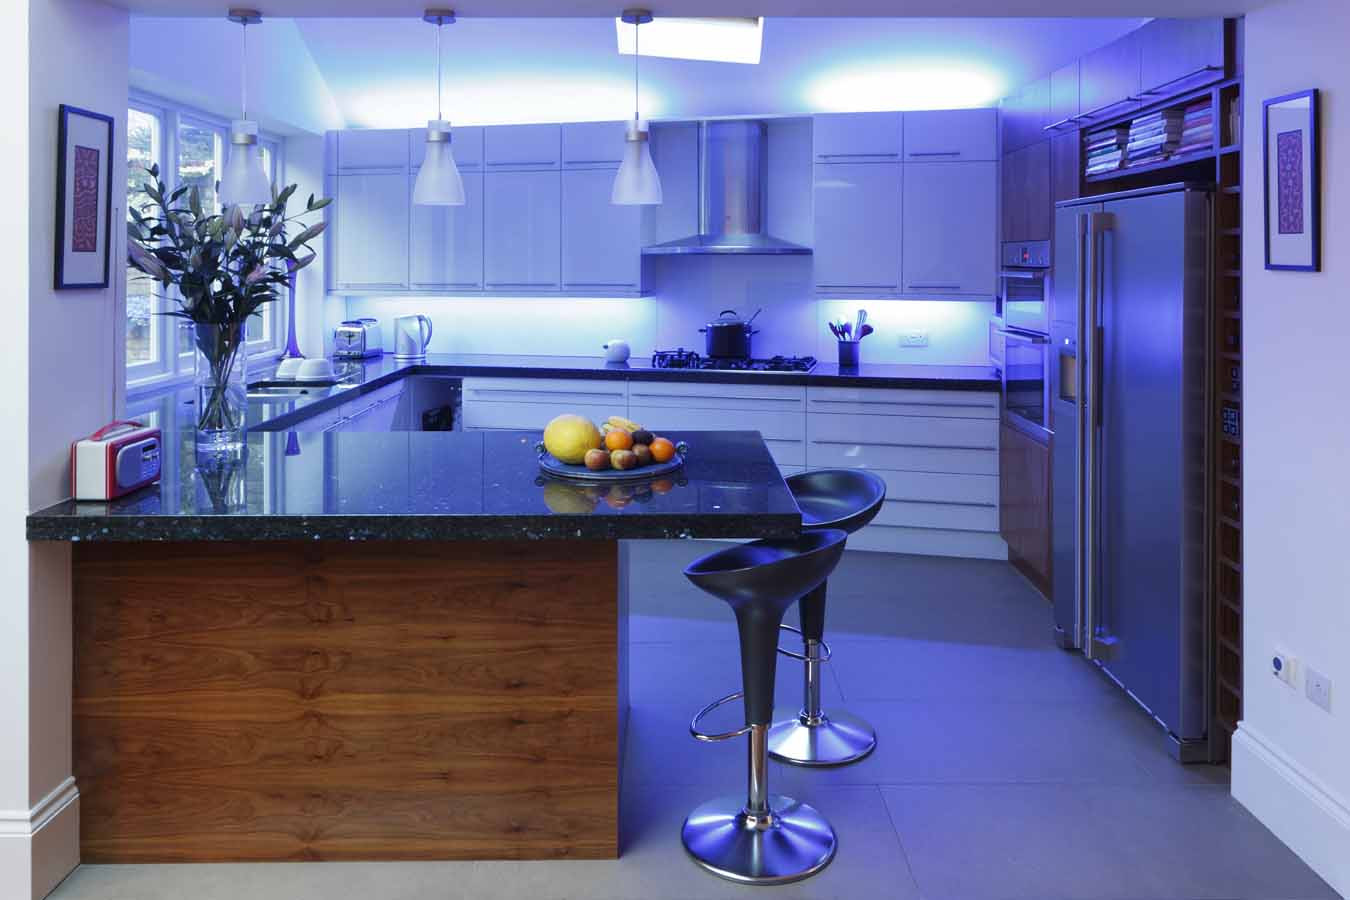 choosing led light for kitchen